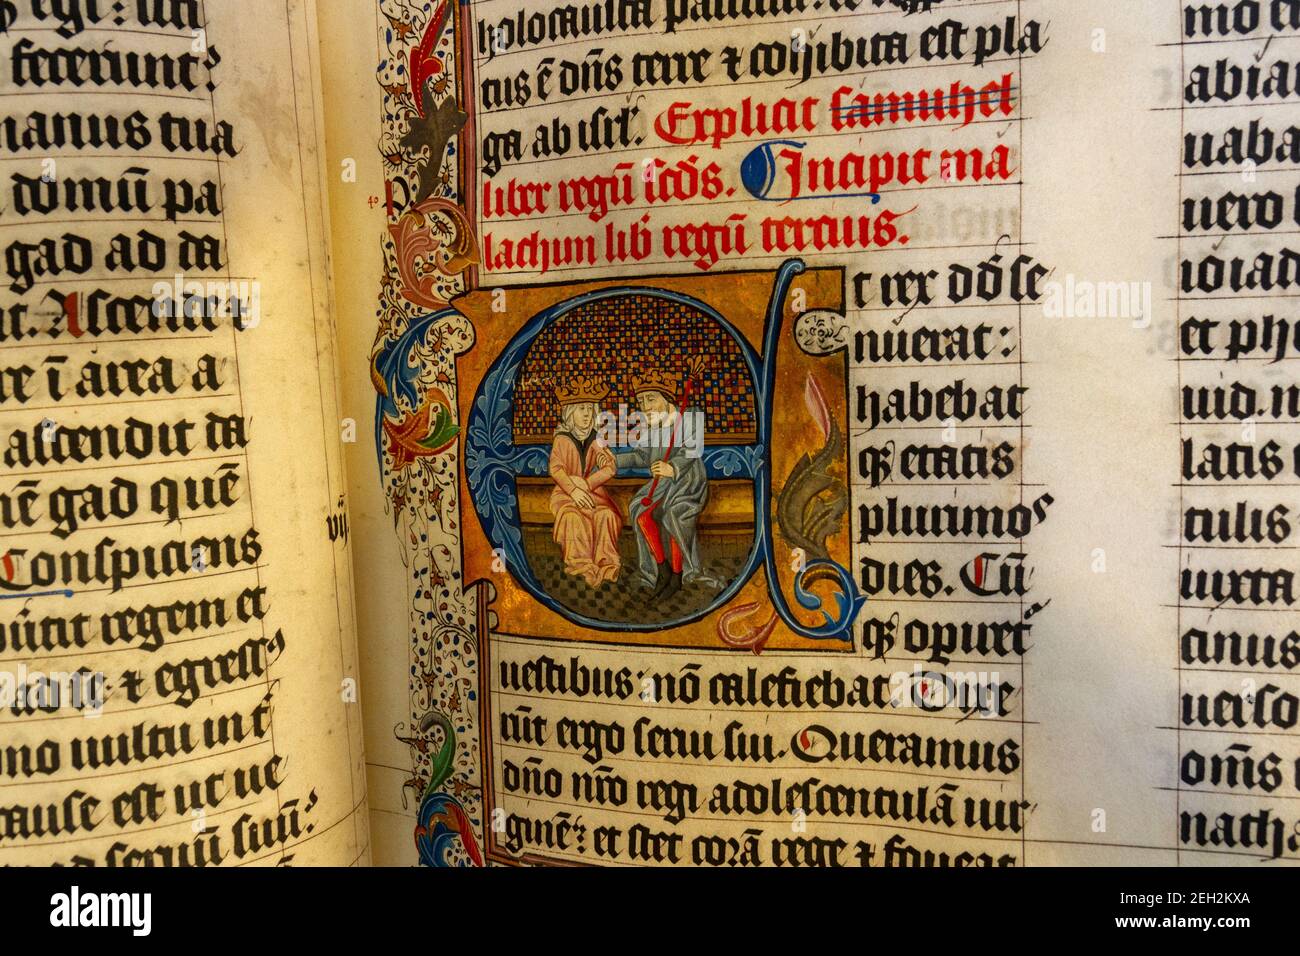 Primo piano di una pagina della Bibbia di Malmesbury, risalente a 600 anni fa, in quattro parti, in mostra all'interno di Malmesbury Abbey, Malmesbury, Wiltshire, Regno Unito. Foto Stock